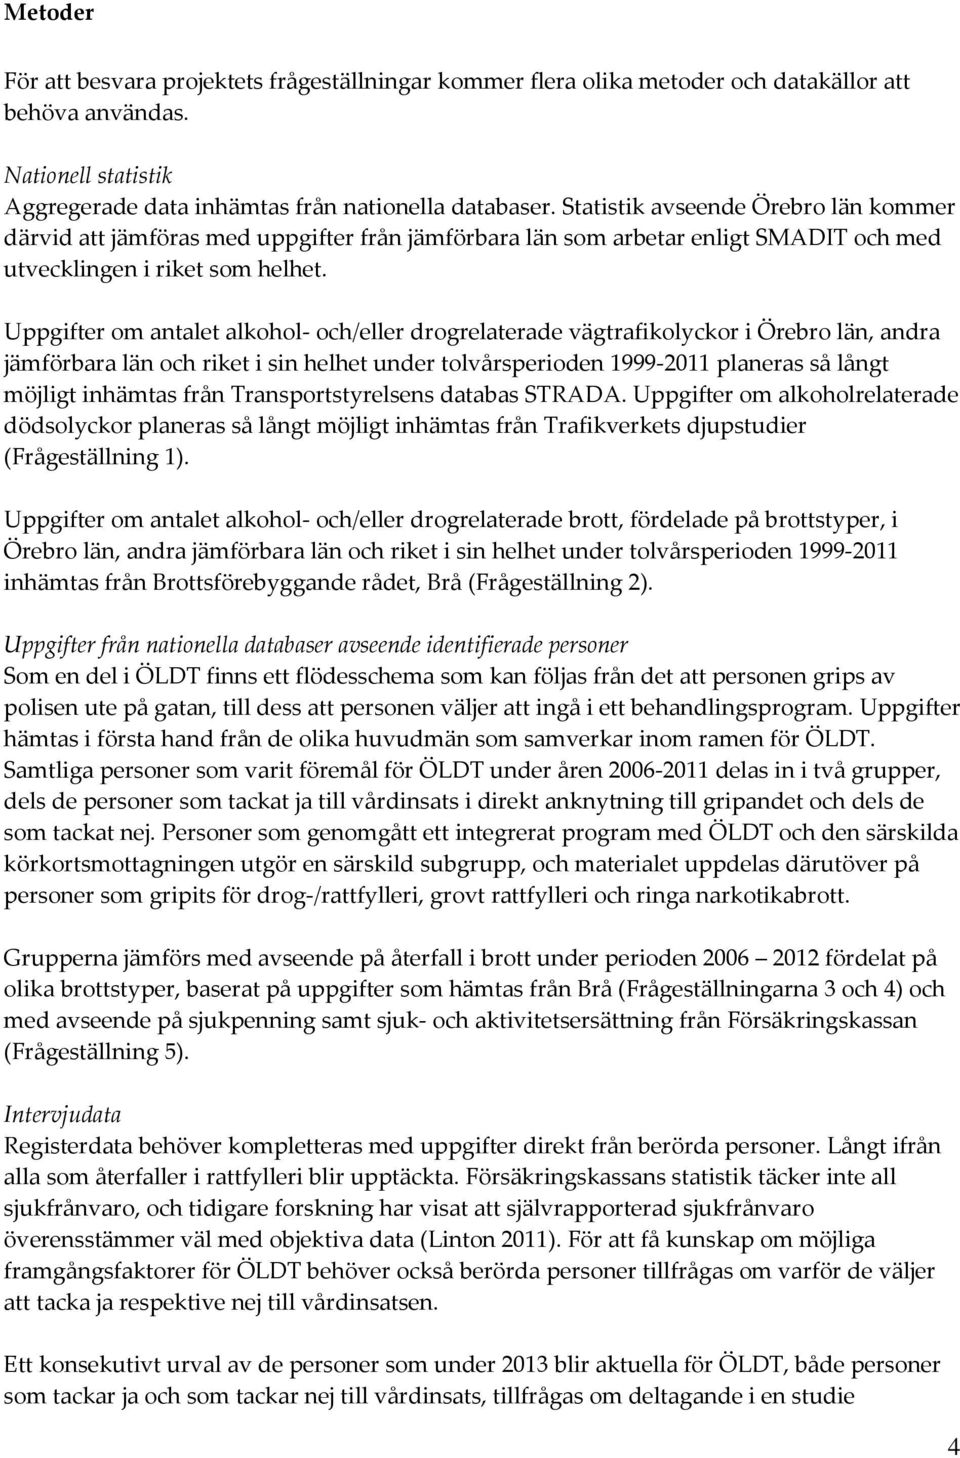 Uppgifter om antalet alkohol- och/eller drogrelaterade vägtrafikolyckor i Örebro län, andra jämförbara län och riket i sin helhet under tolvårsperioden 1999-2011 planeras så långt möjligt inhämtas